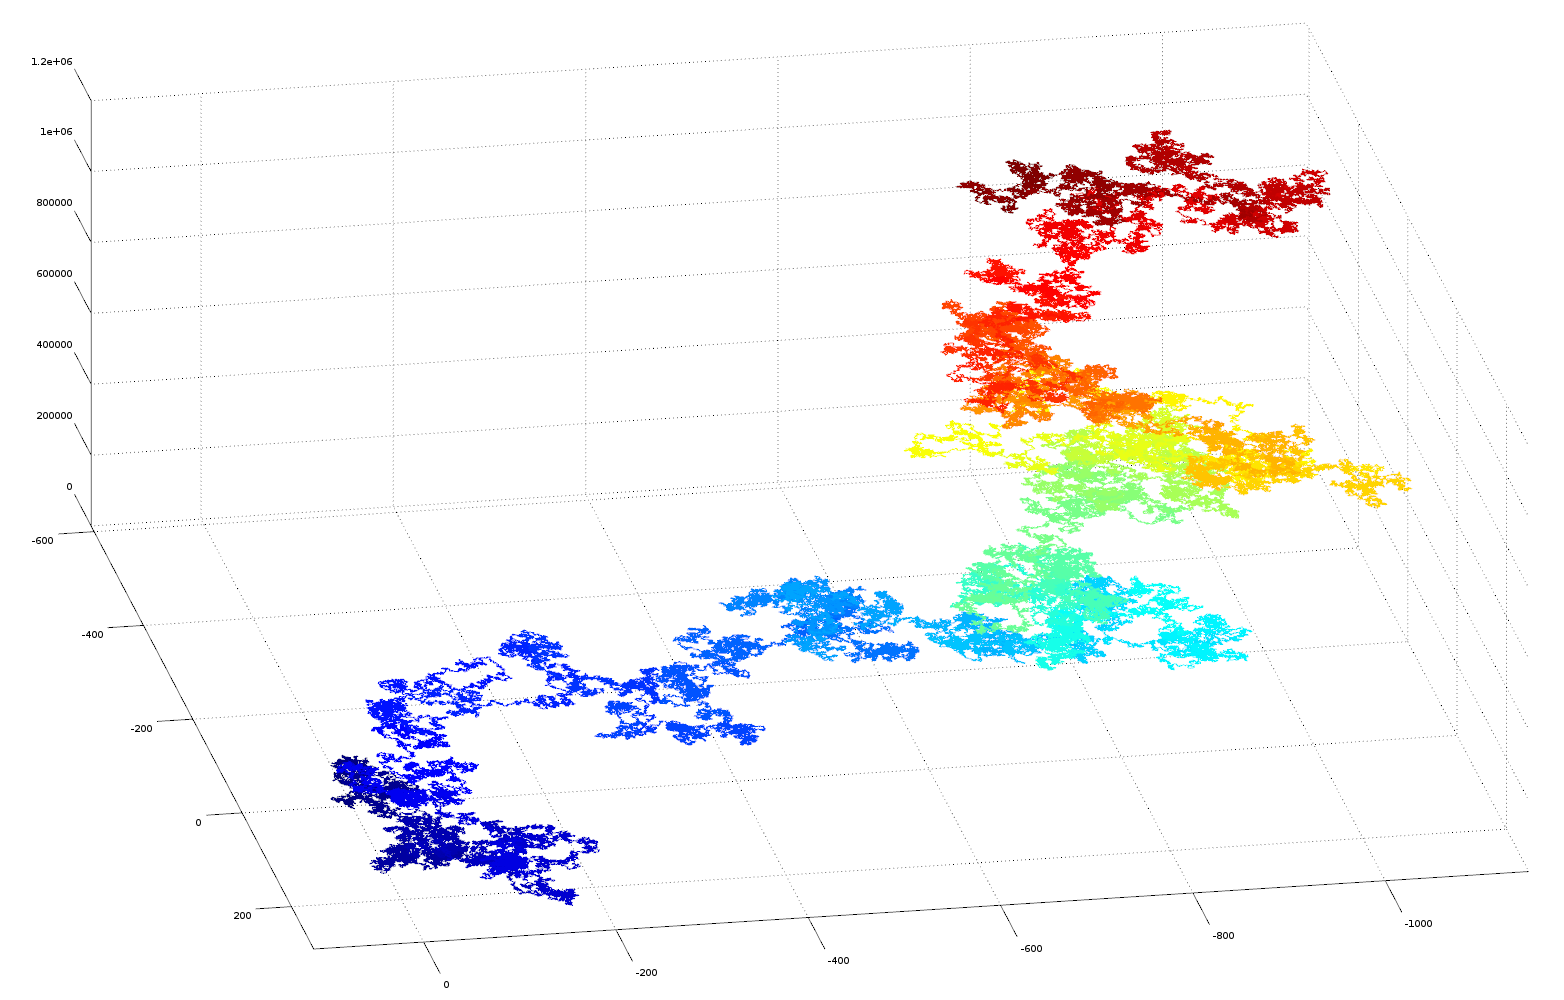 3D plot of pi as vector